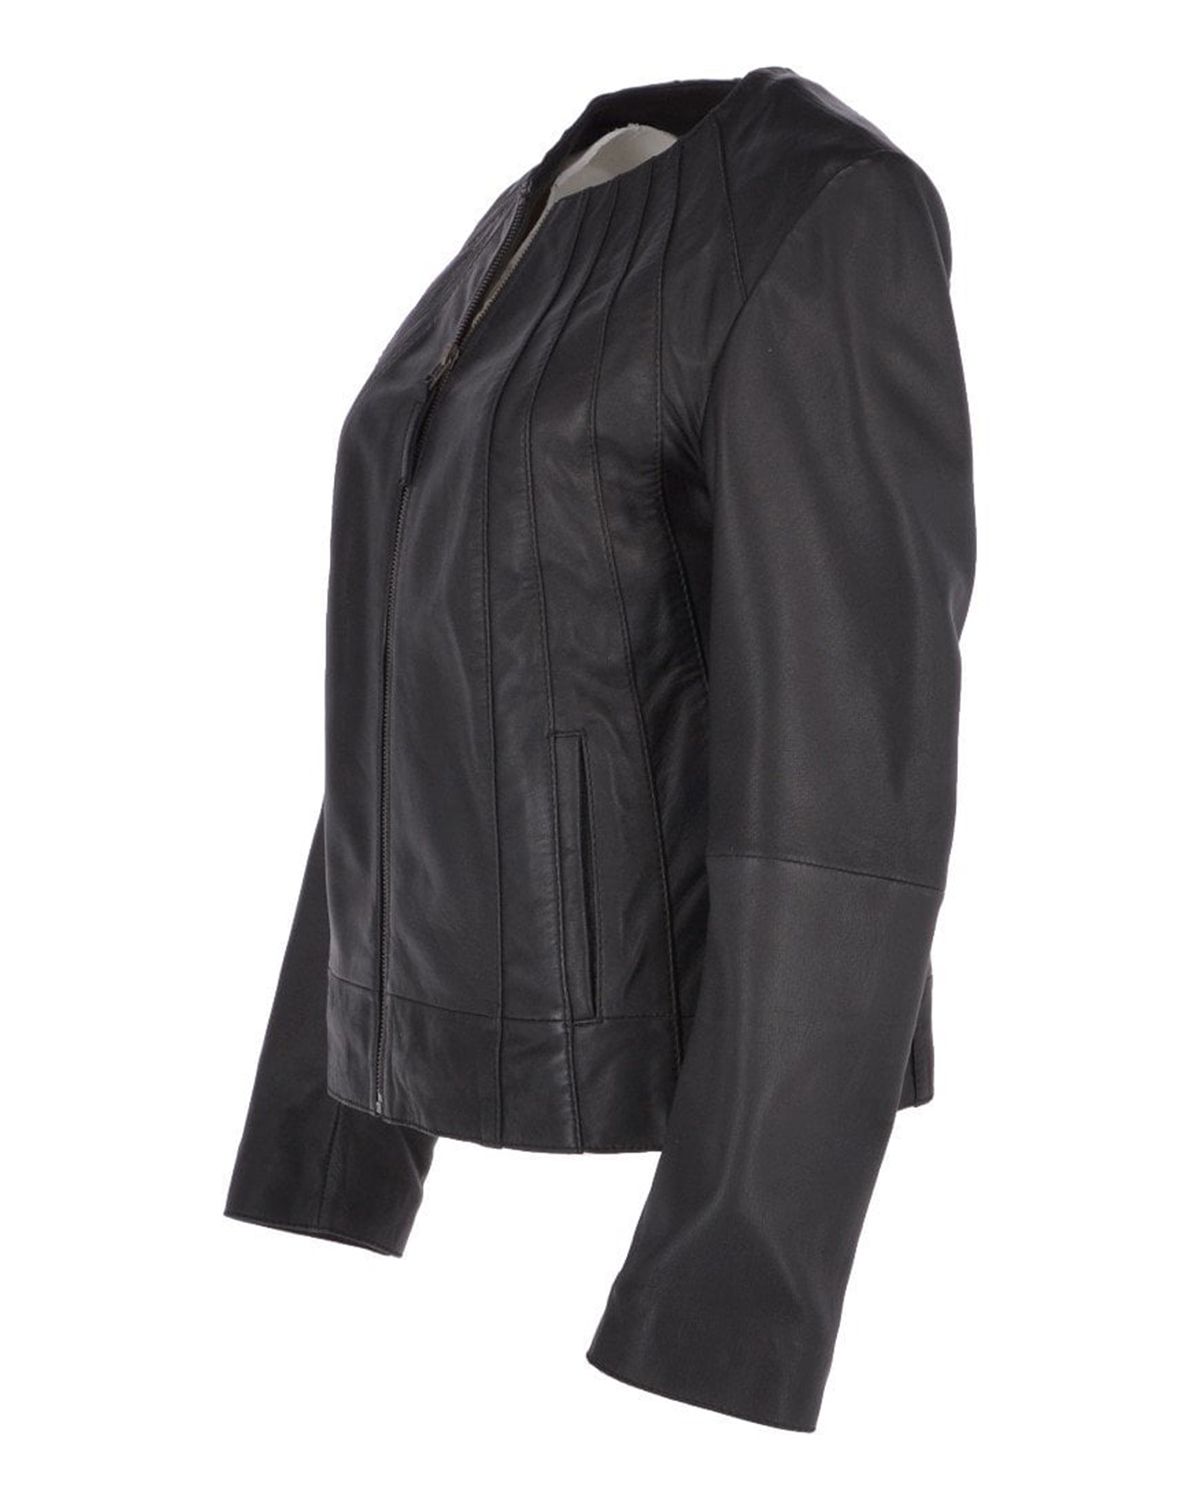 Womens Stylish Collarless Sheepskin Leather Jacket | Elite Jacket